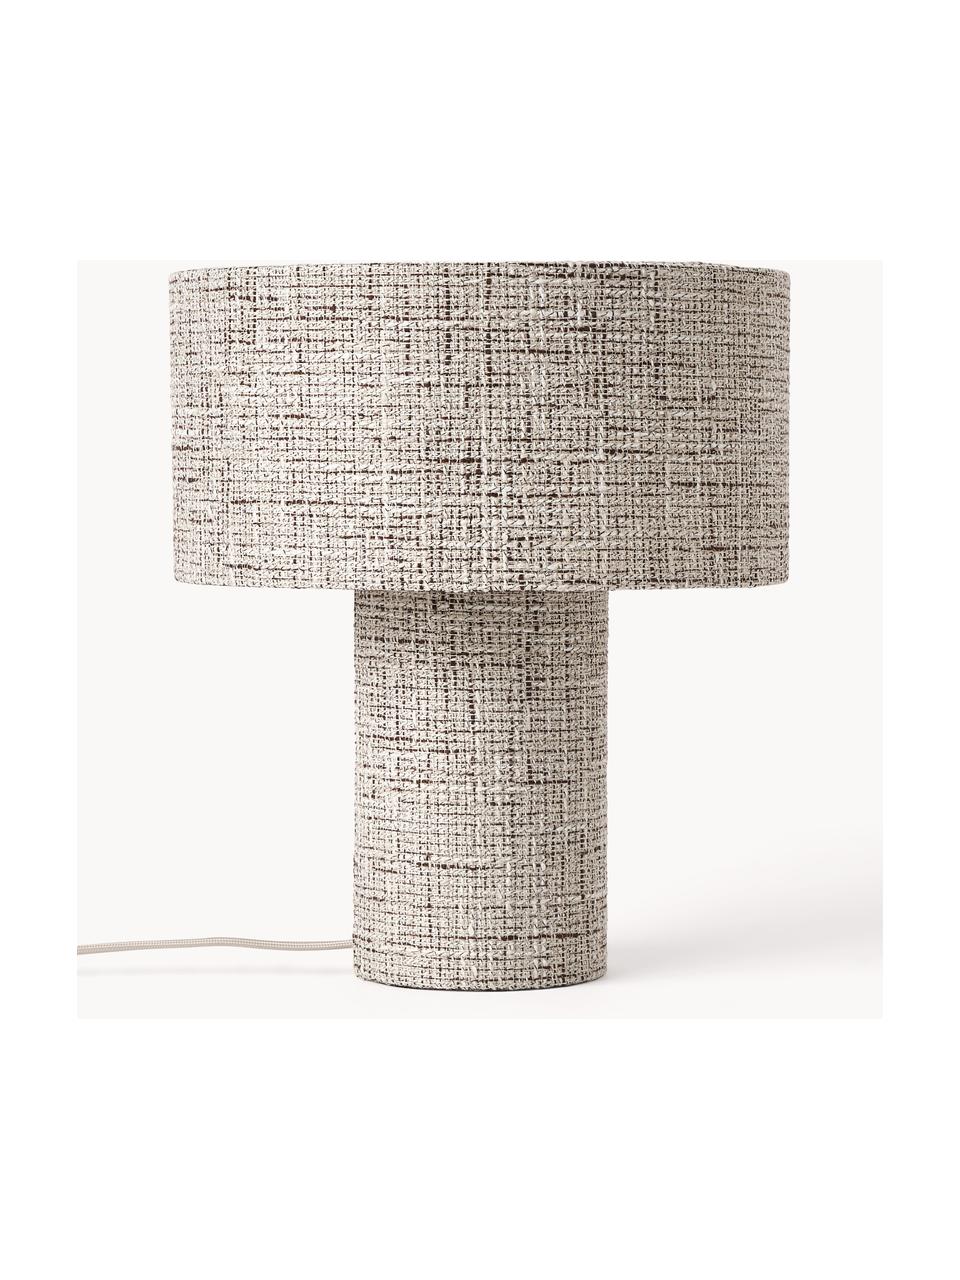 Lampa stołowa Bouclé Ron, Bouclé w odcieniu brązowego, Ø 30 x W 35 cm